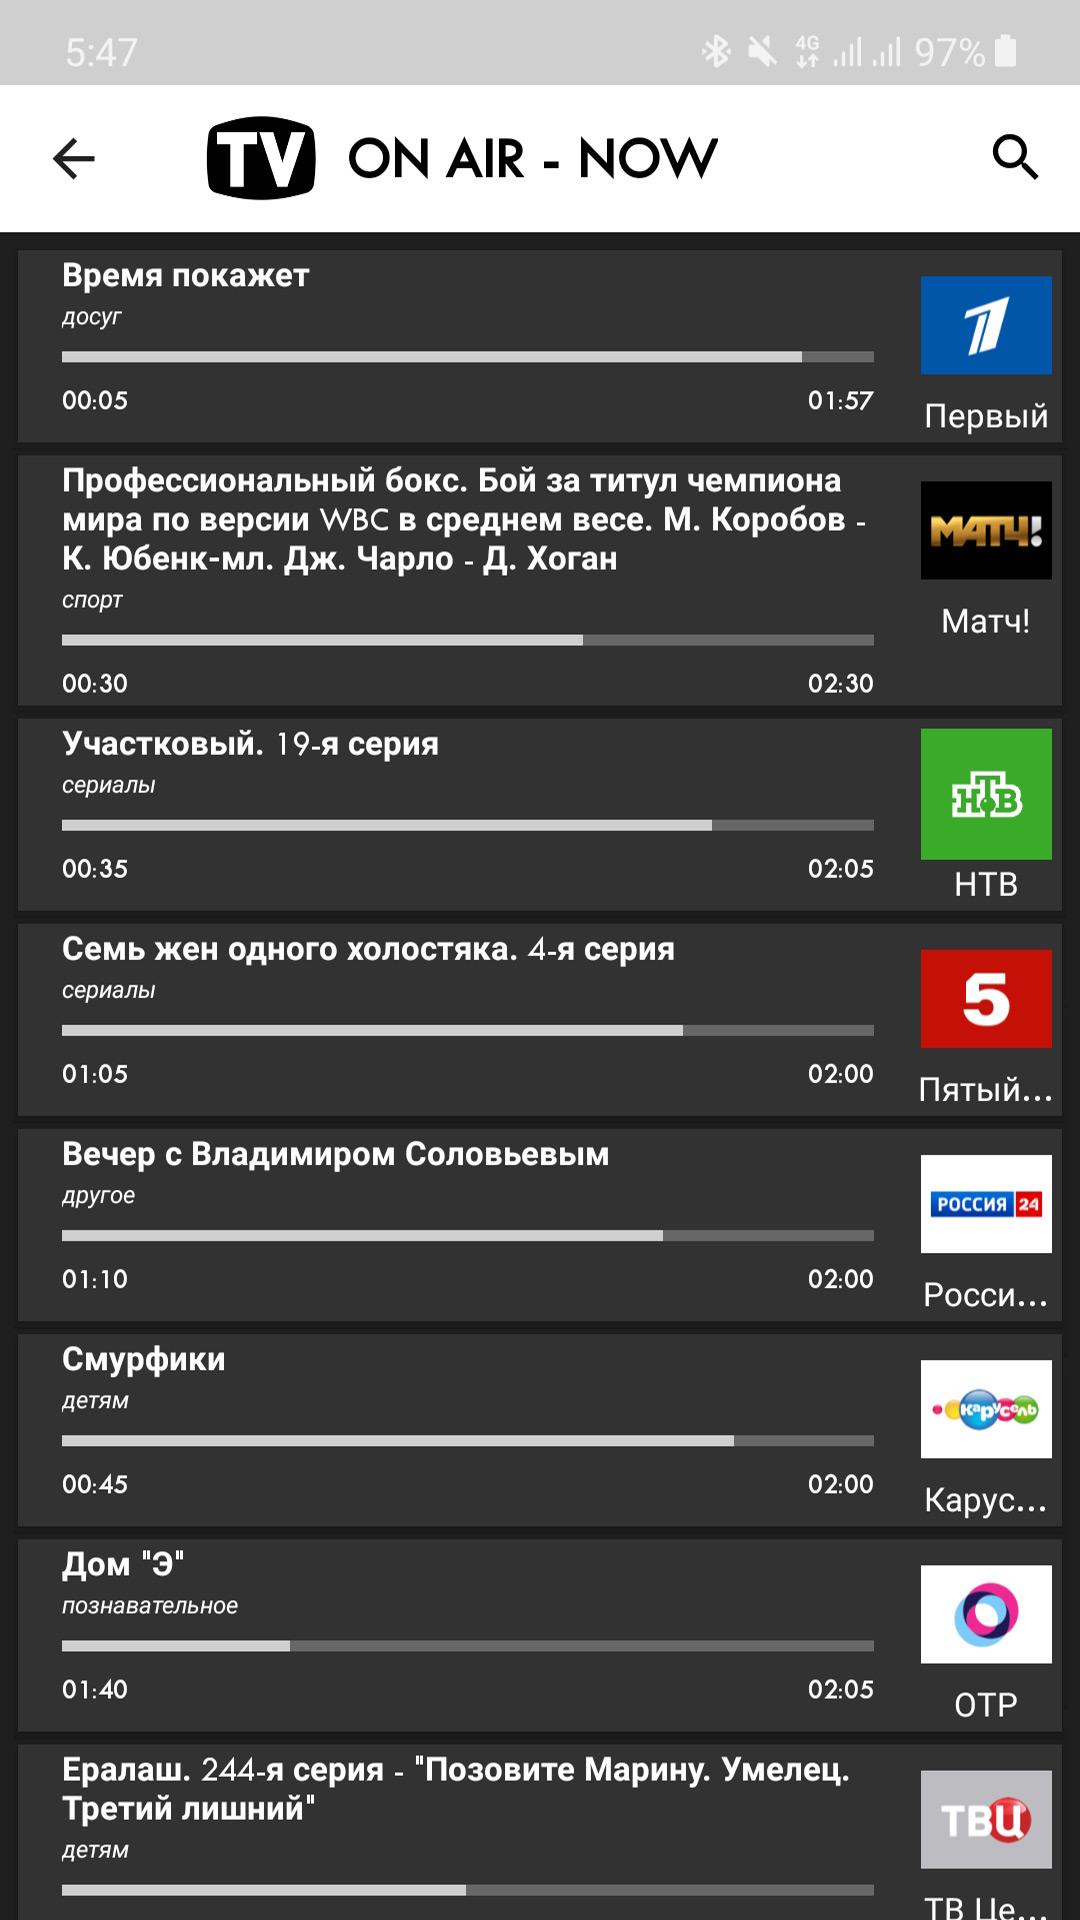 TV Russia Free TV Listing Guide APK 7.0 Download for Android – Download TV  Russia Free TV Listing Guide APK Latest Version - APKFab.com